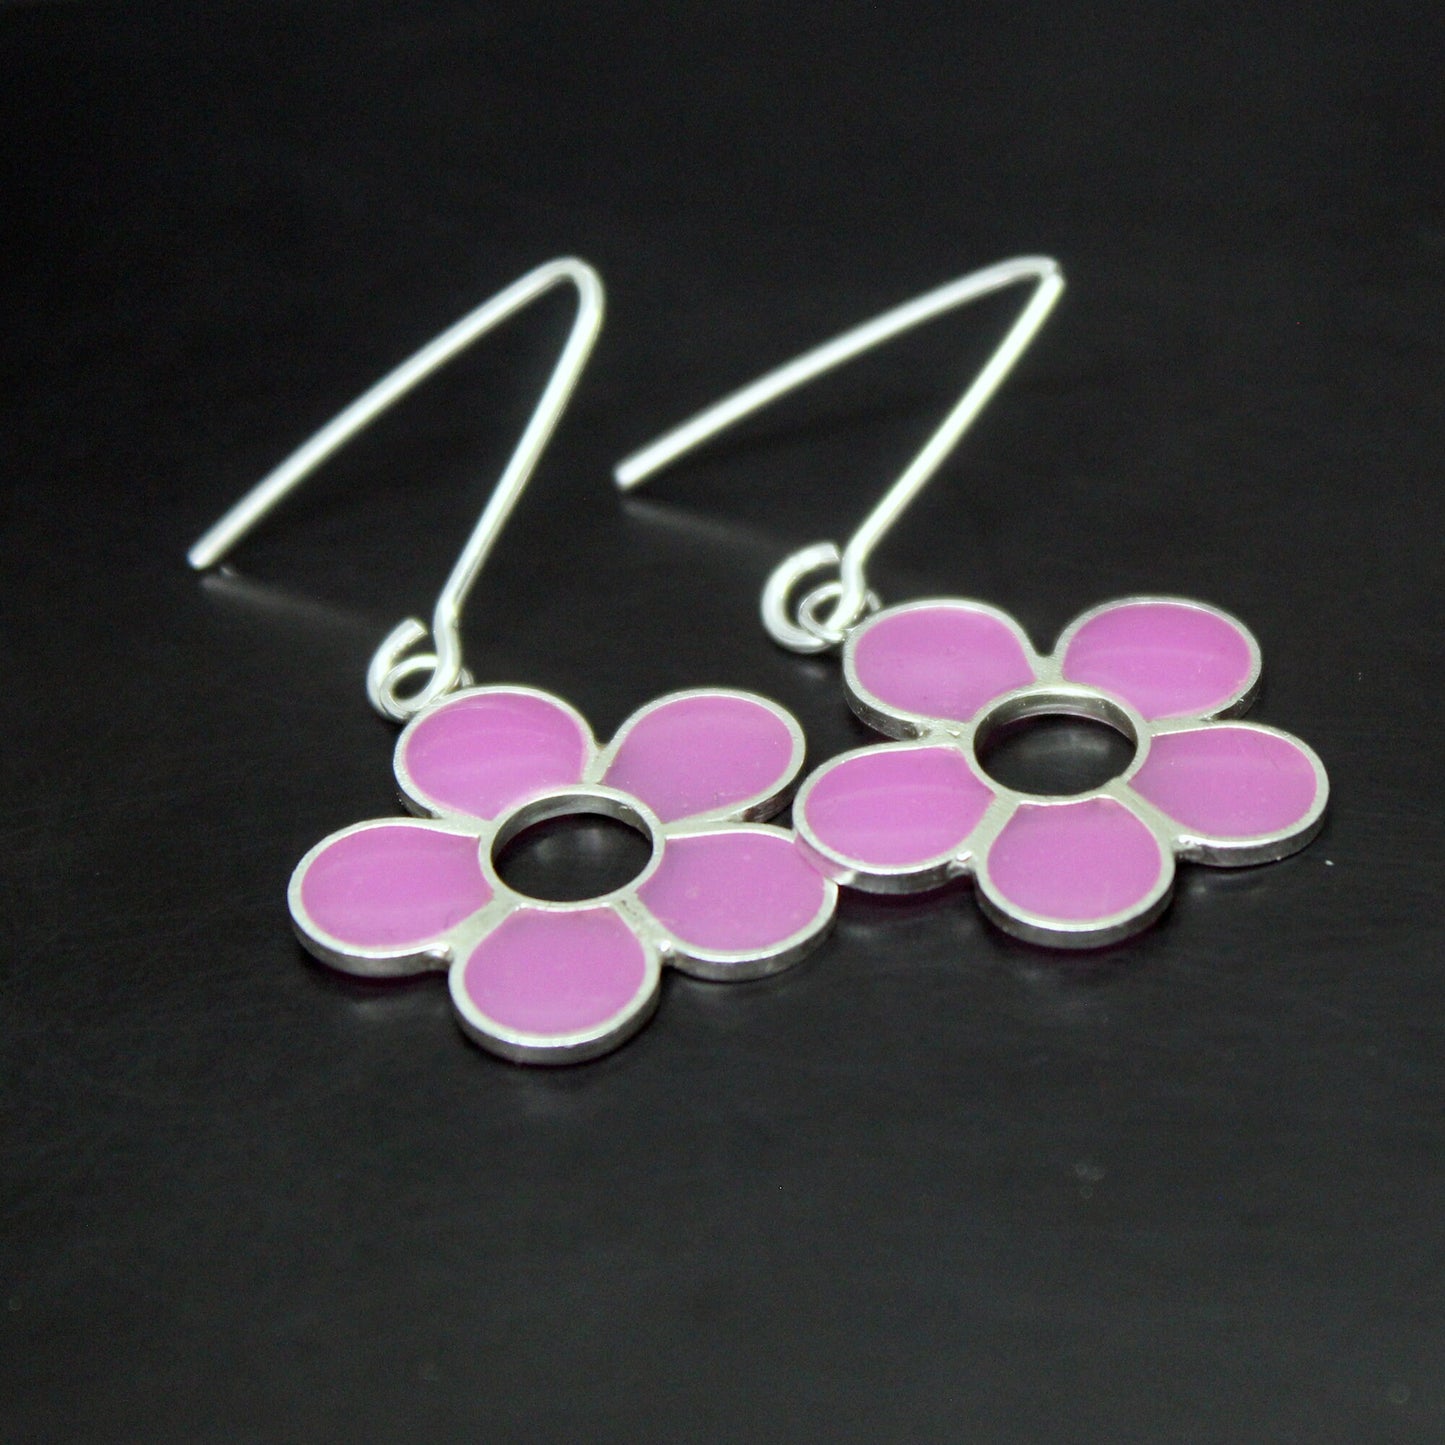 Lilac flowers earrings in 925 silver